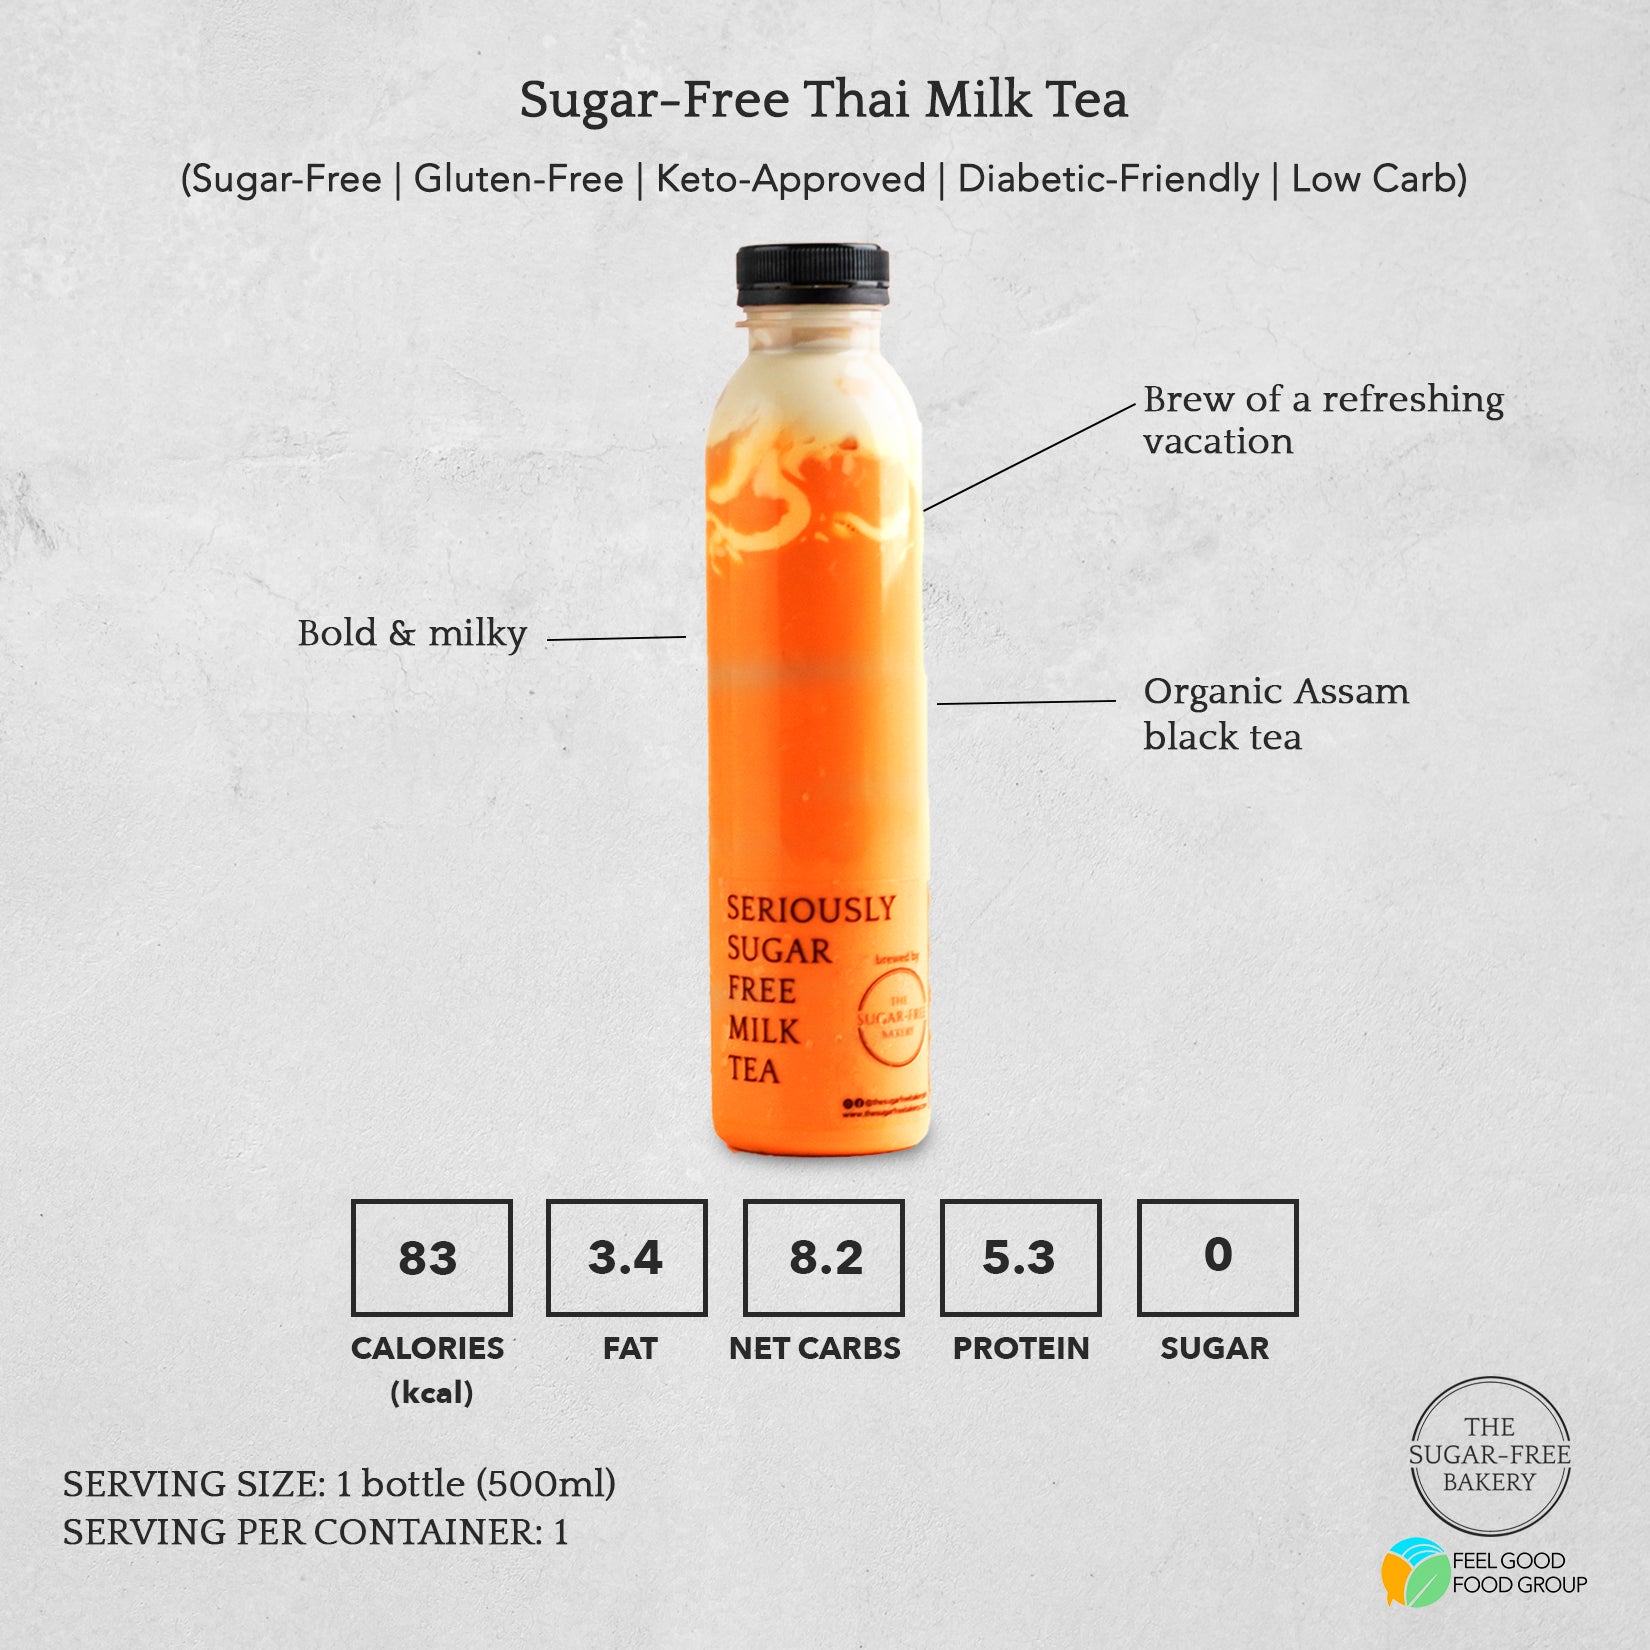 Seriously Sugar-Free Thai Milk Tea